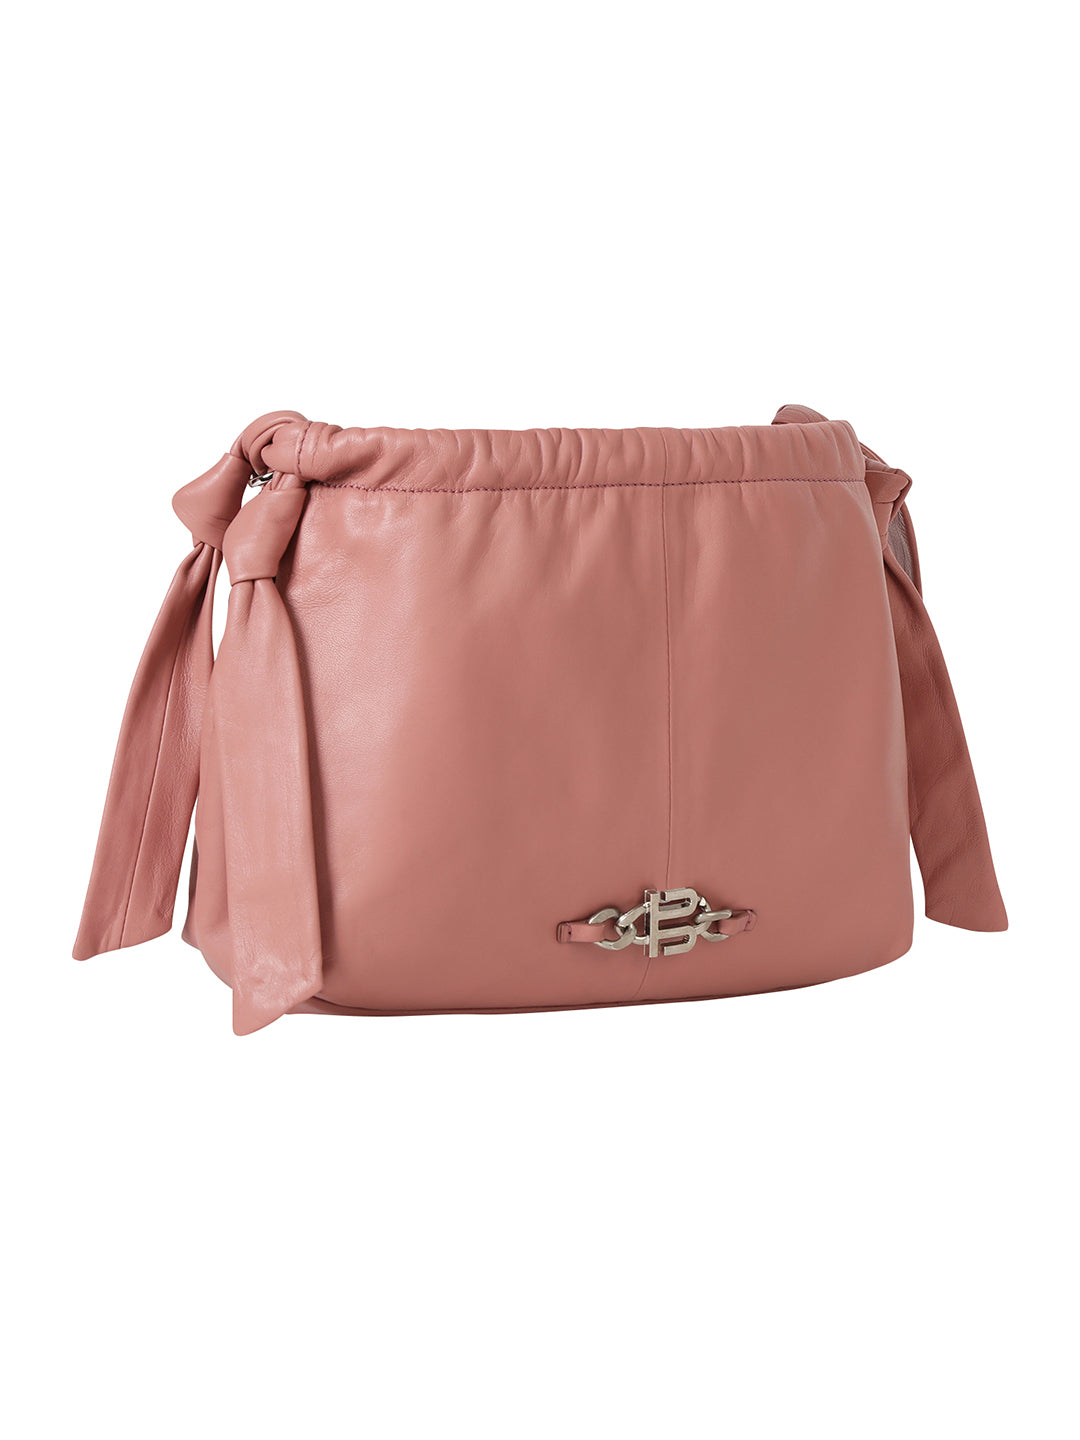 Solza Pink Leather Knotted Shoulder Bag